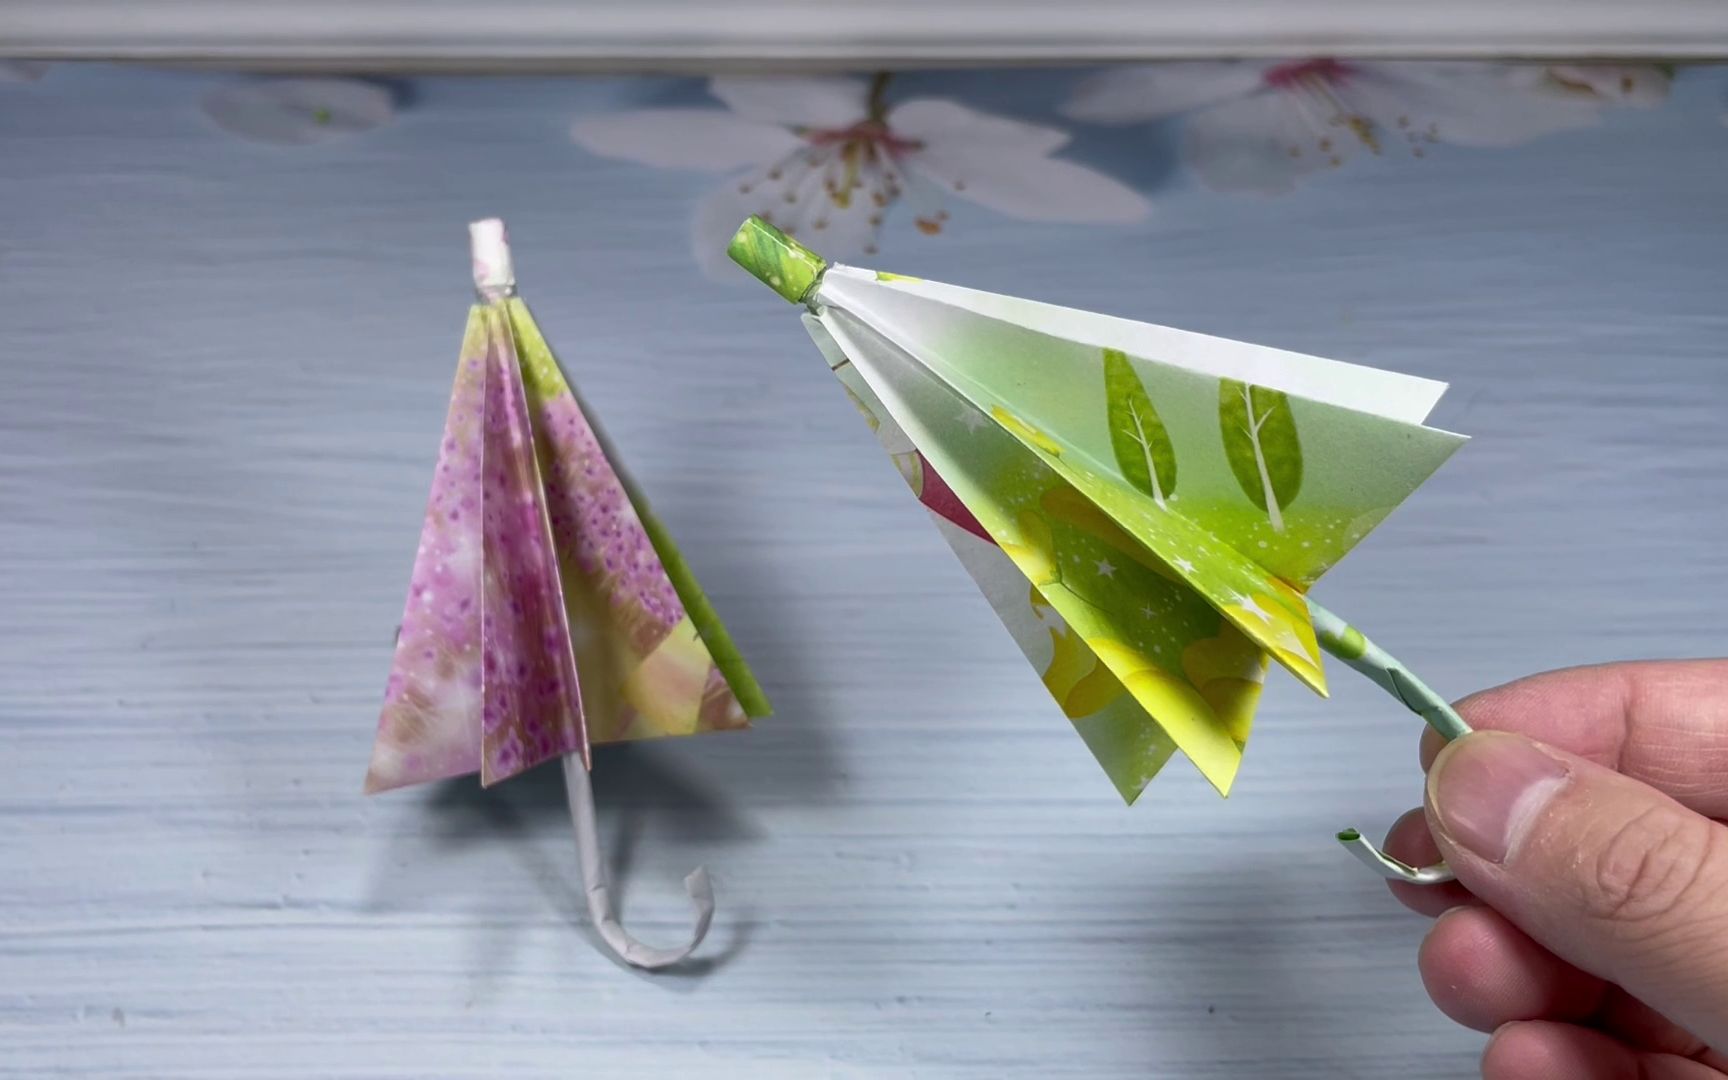 折纸小雨伞,简单易学步骤详细,创意手工制作